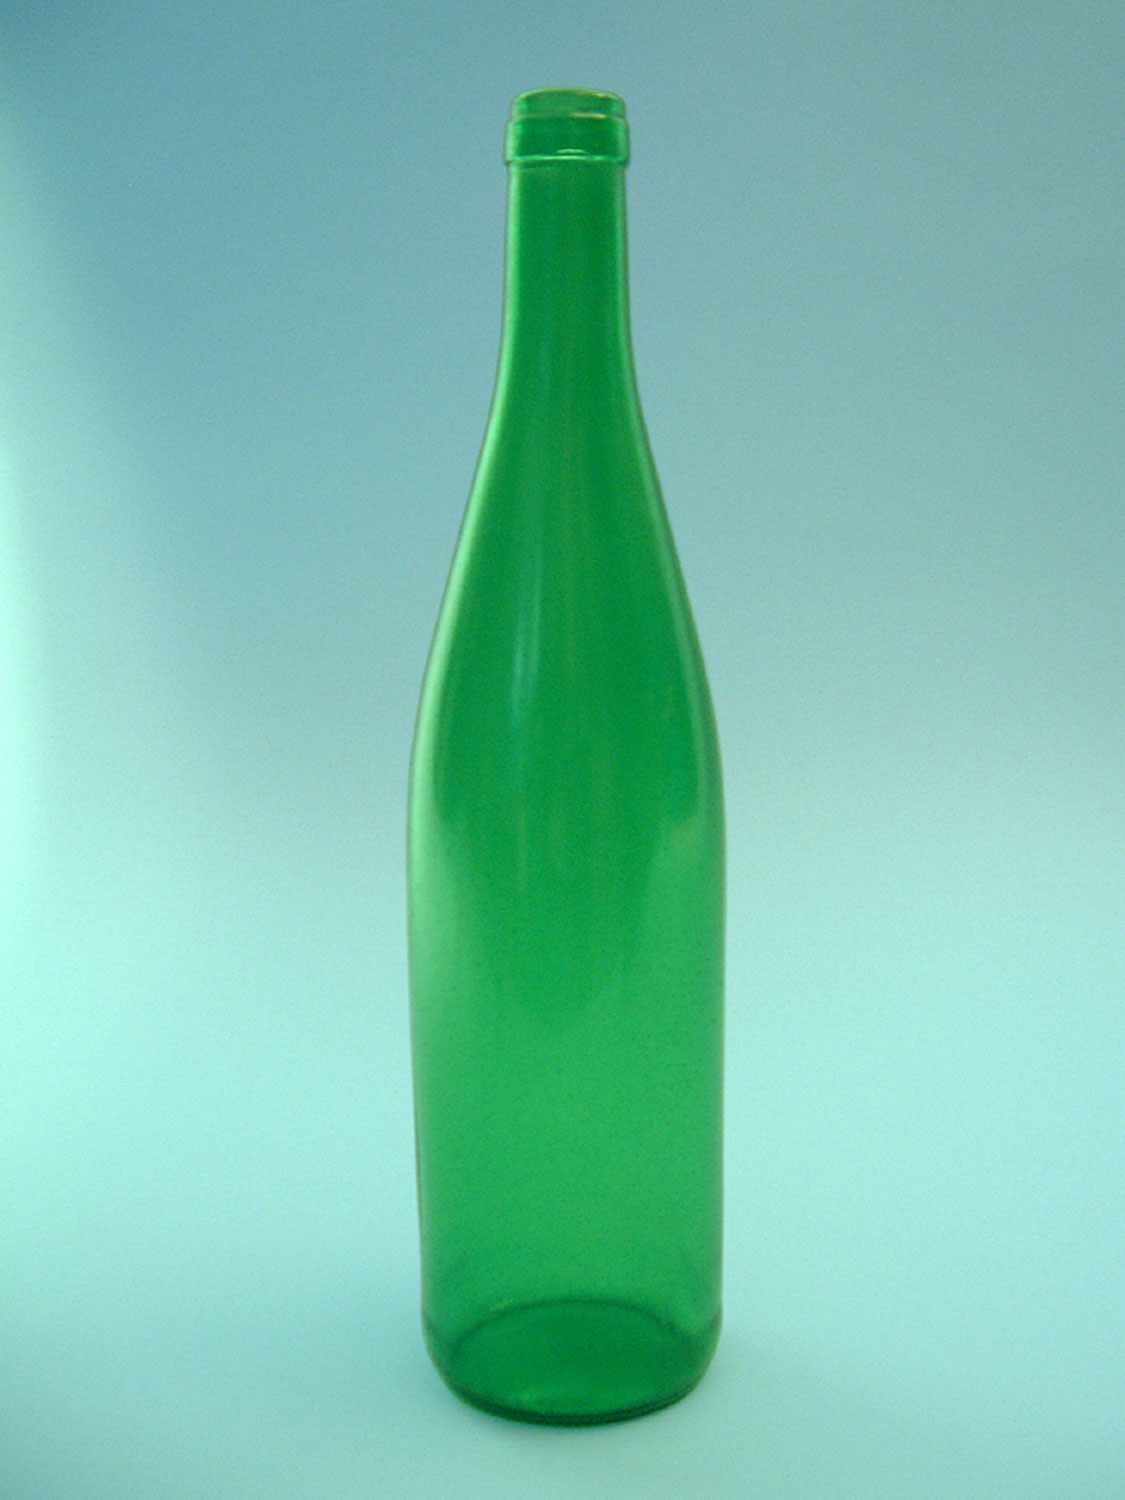 Green wine bottle, 0,7 liter. Size 31 x ø 7,5 cm.